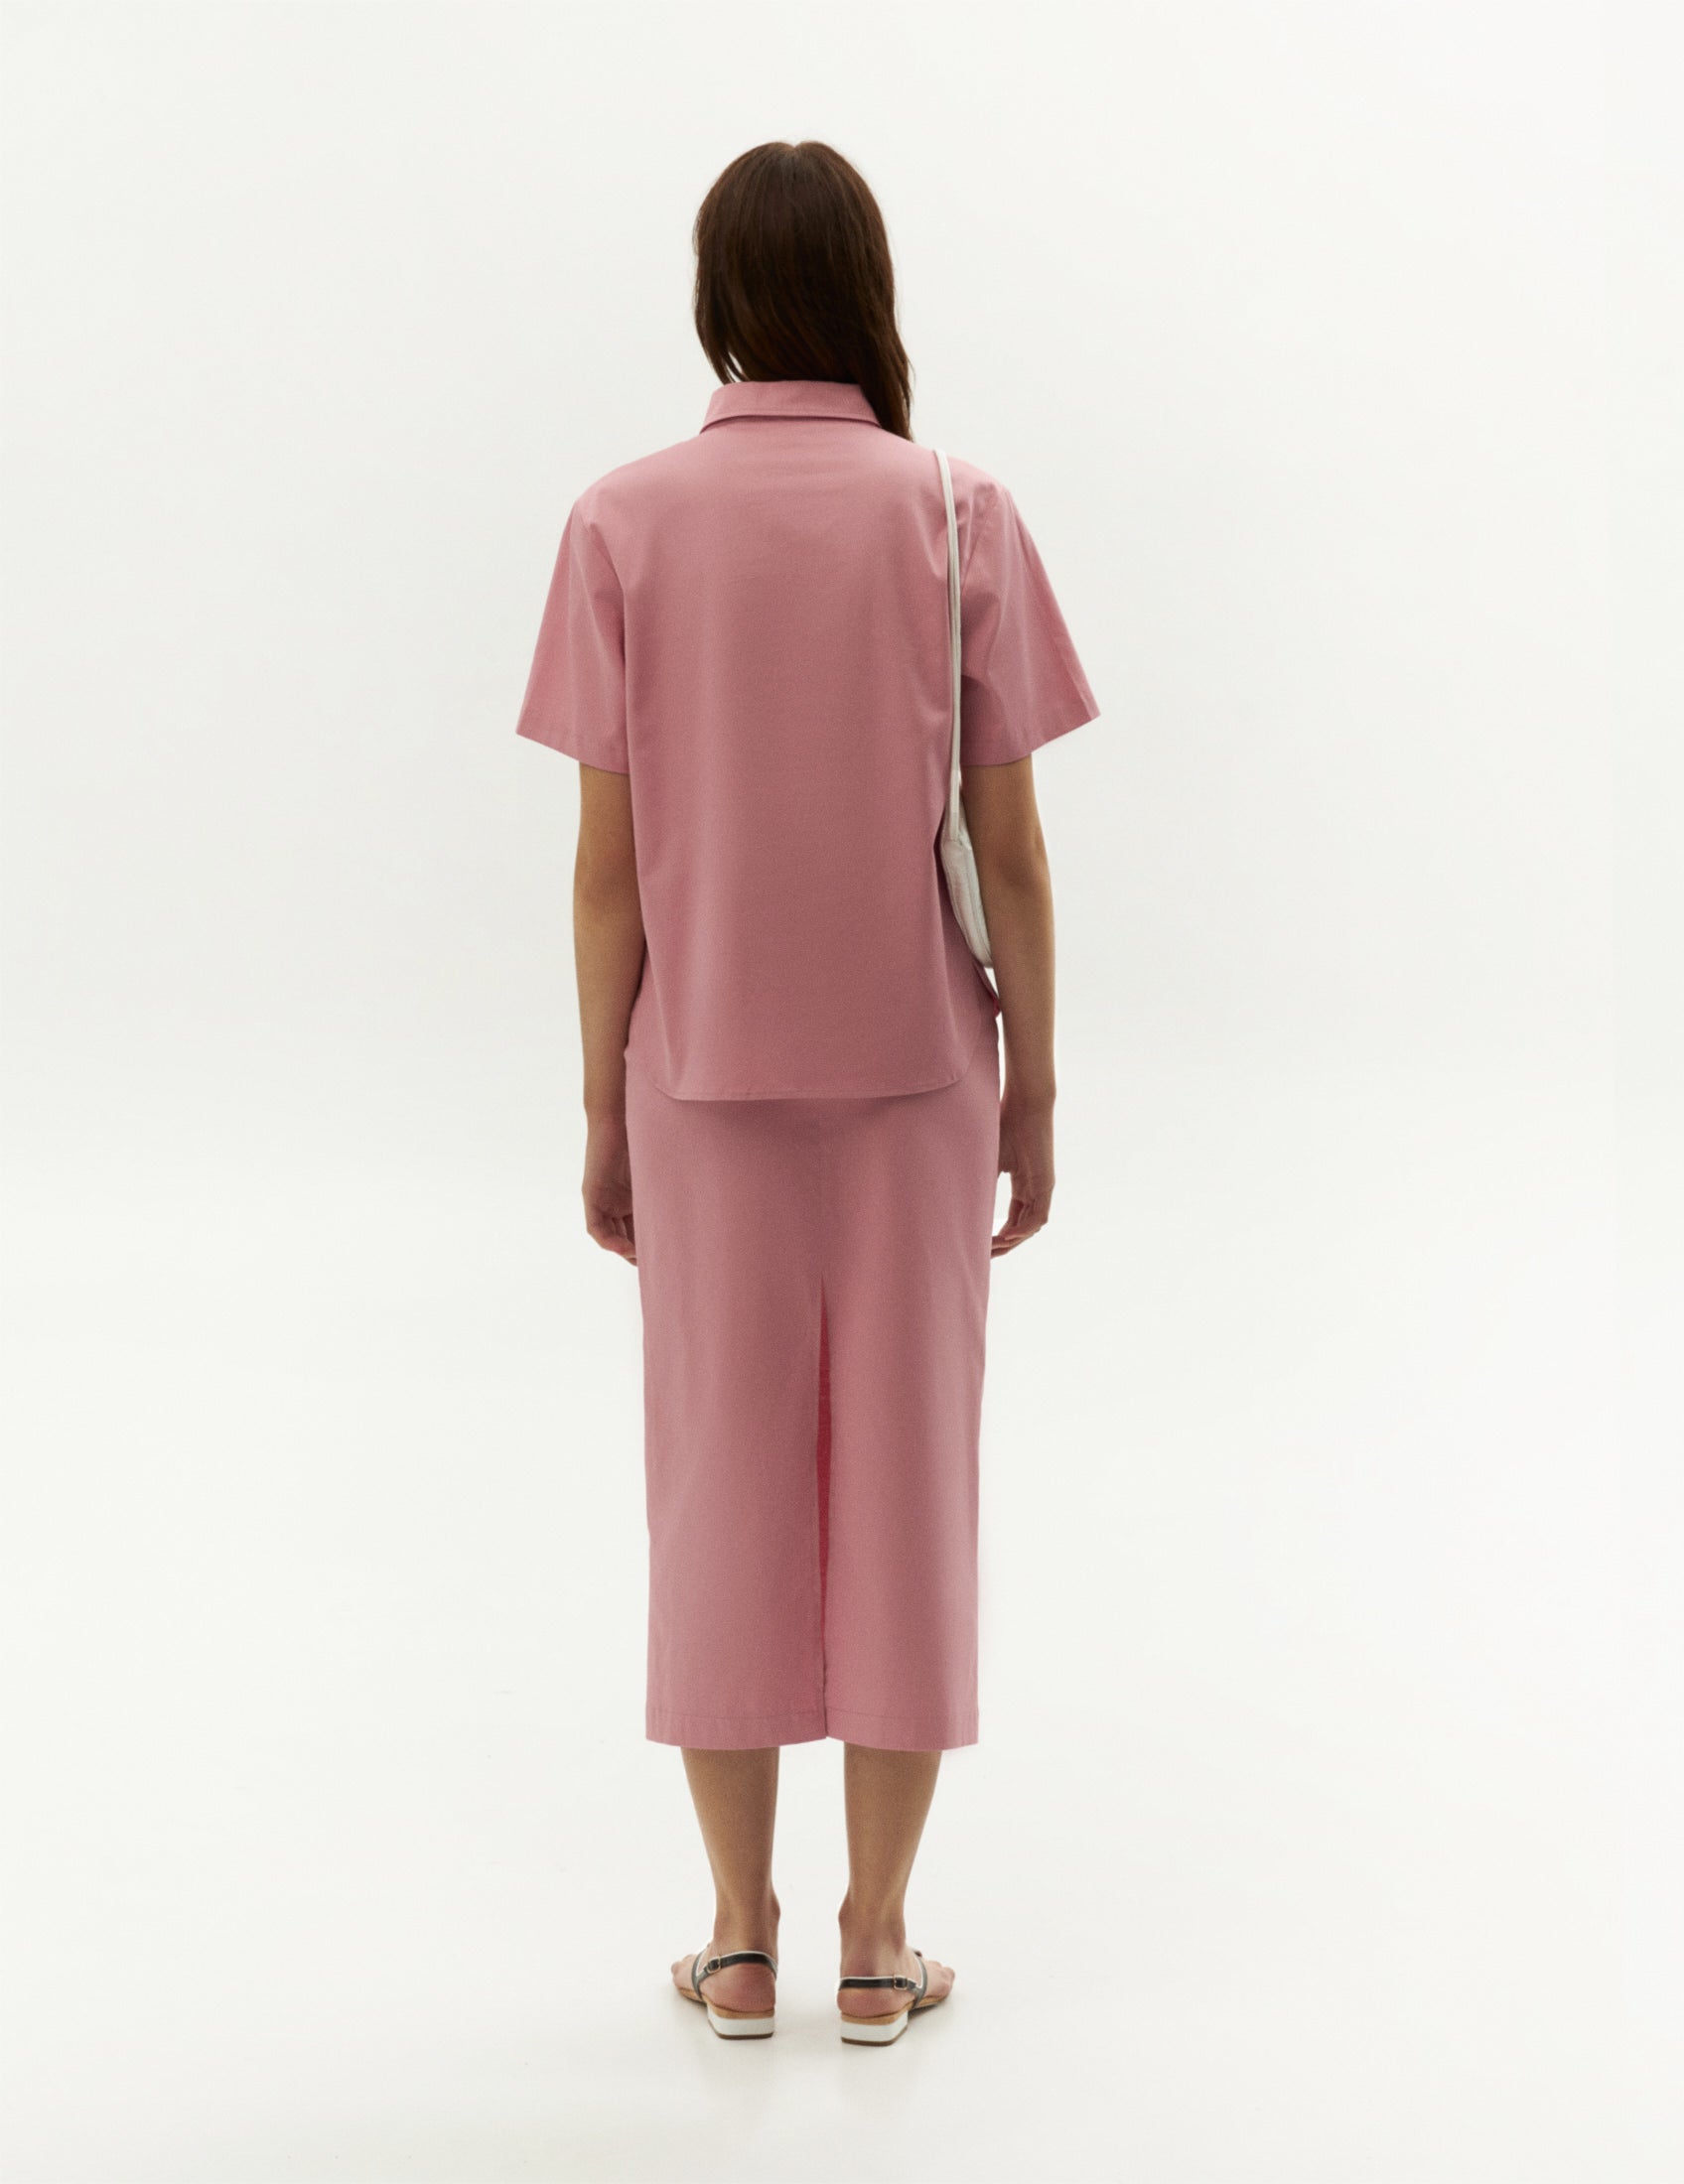 Рожевий костюм поло на спідниця від бренду ФОРМА. FORMA shop online